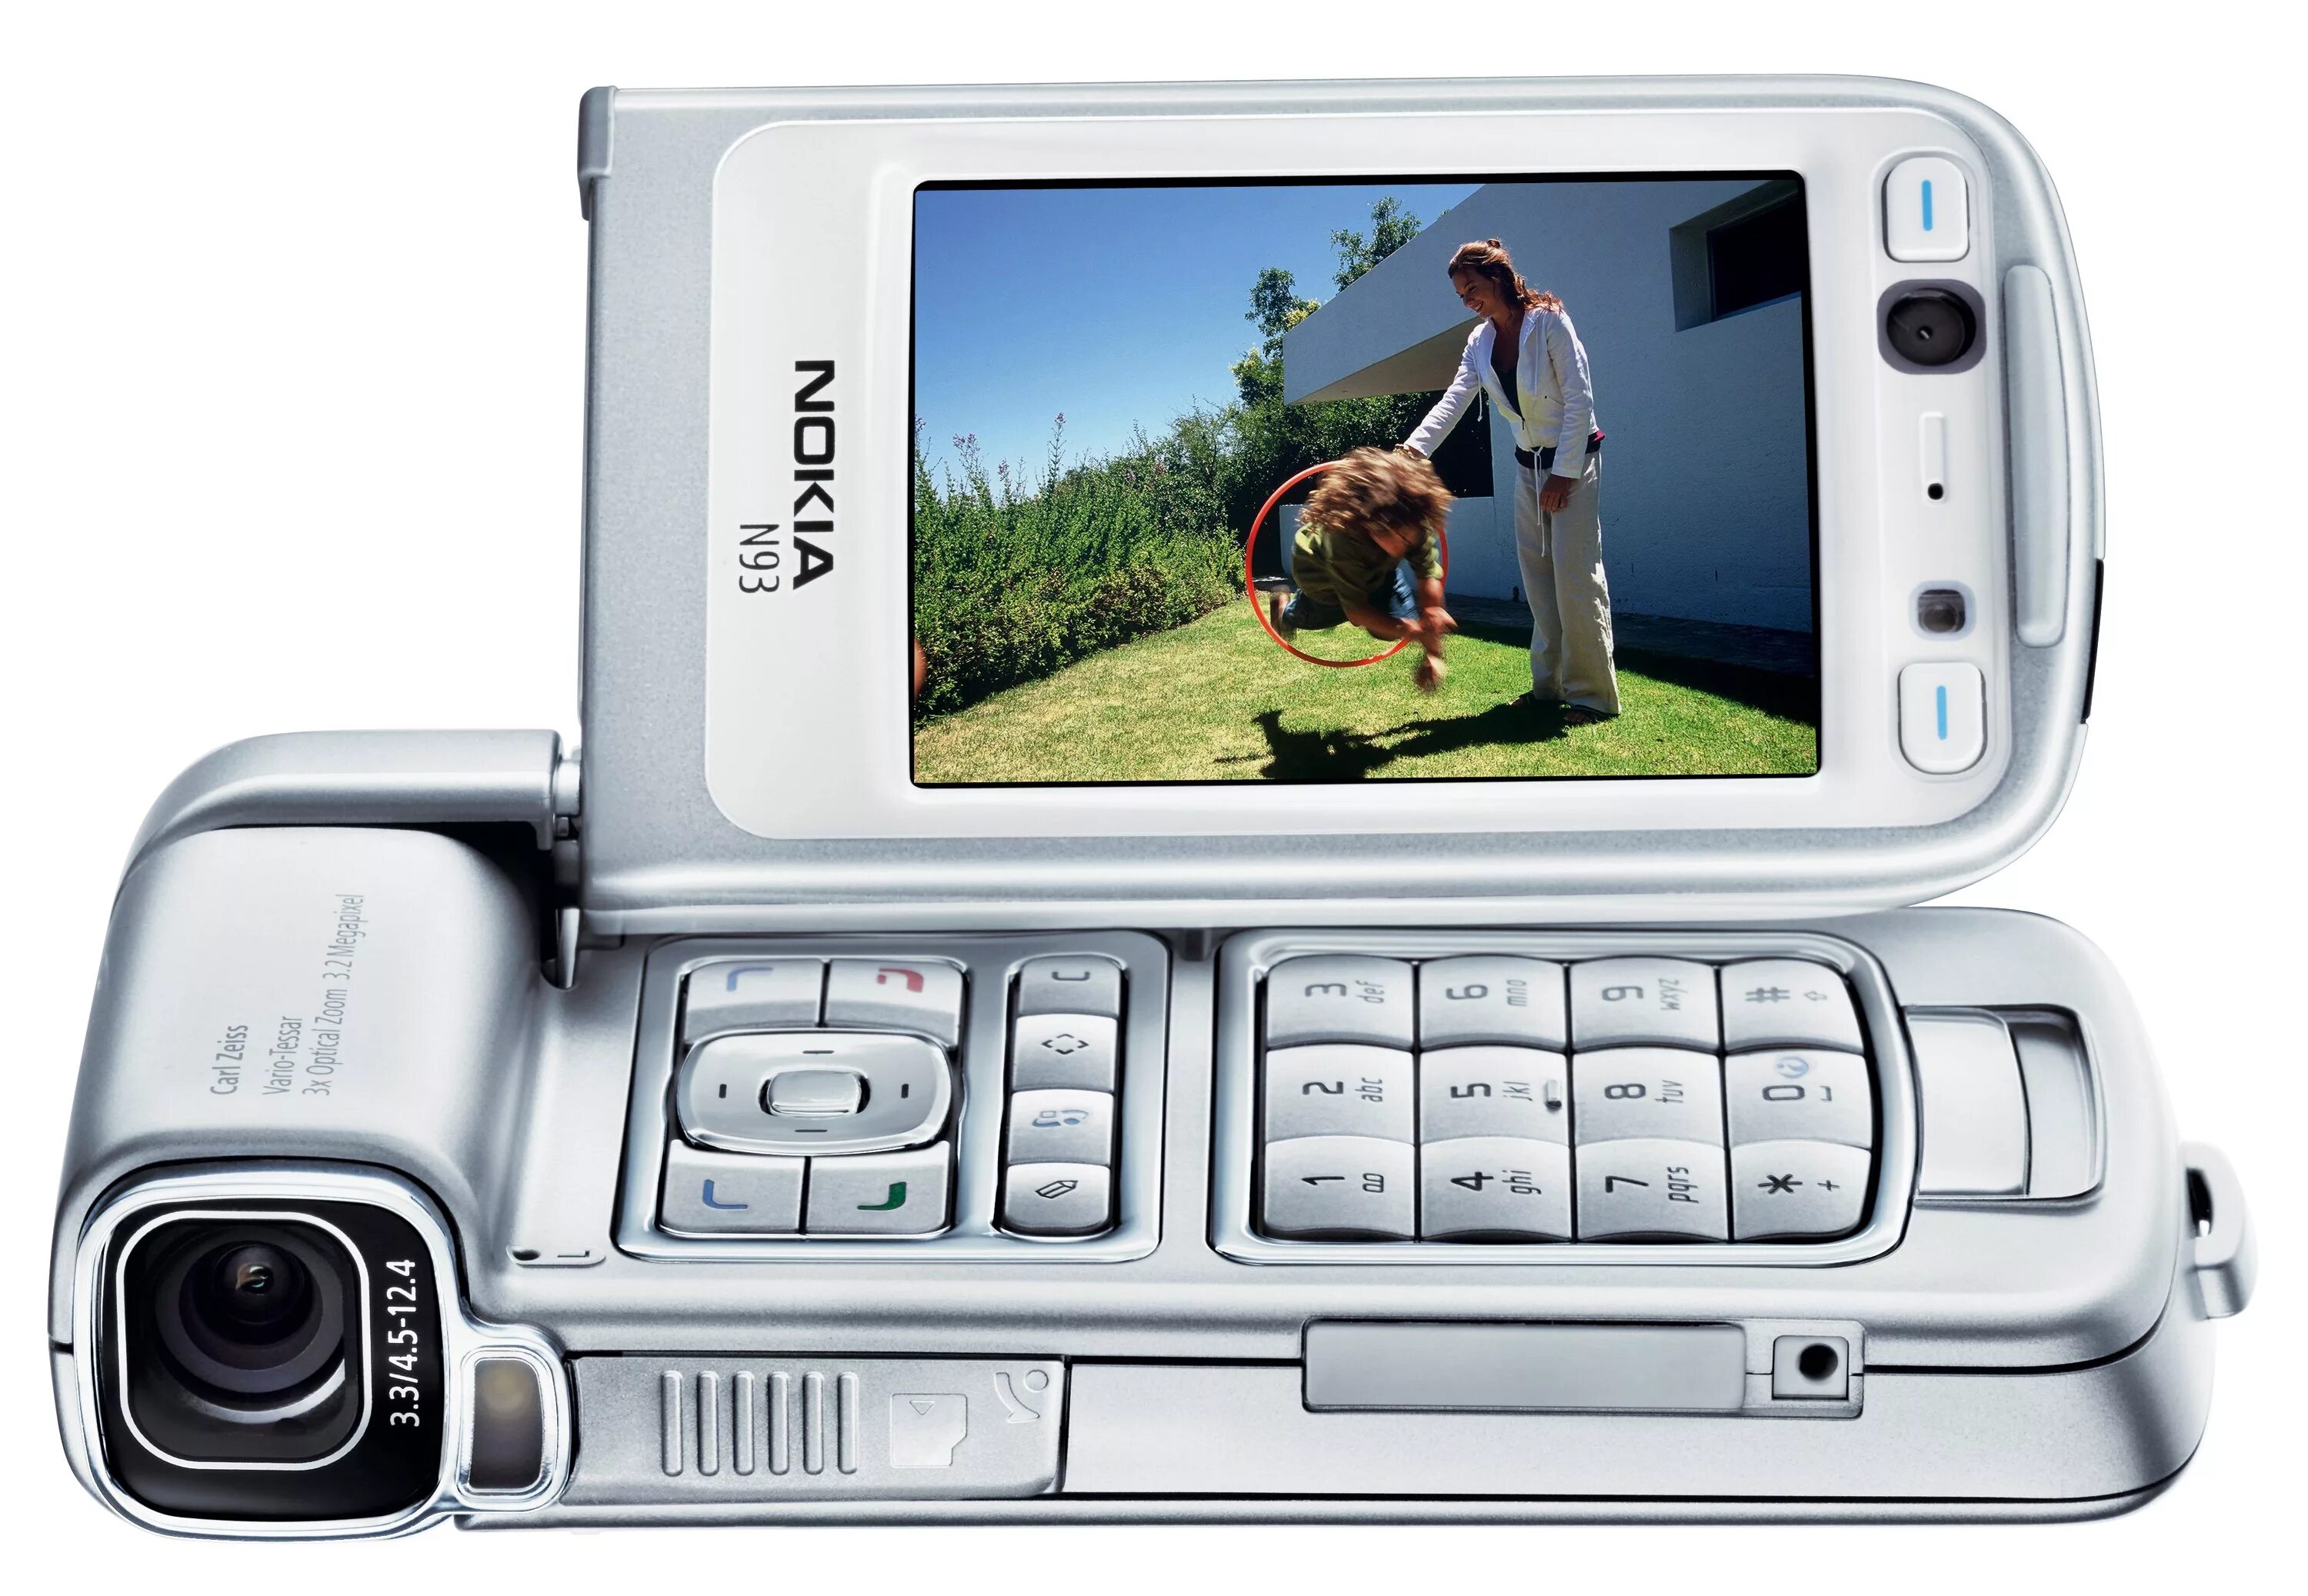 Nokia n93. Nokia n93 2006. Нокиа н93i. Nokia n93 Mini. Телефон камера телевизор